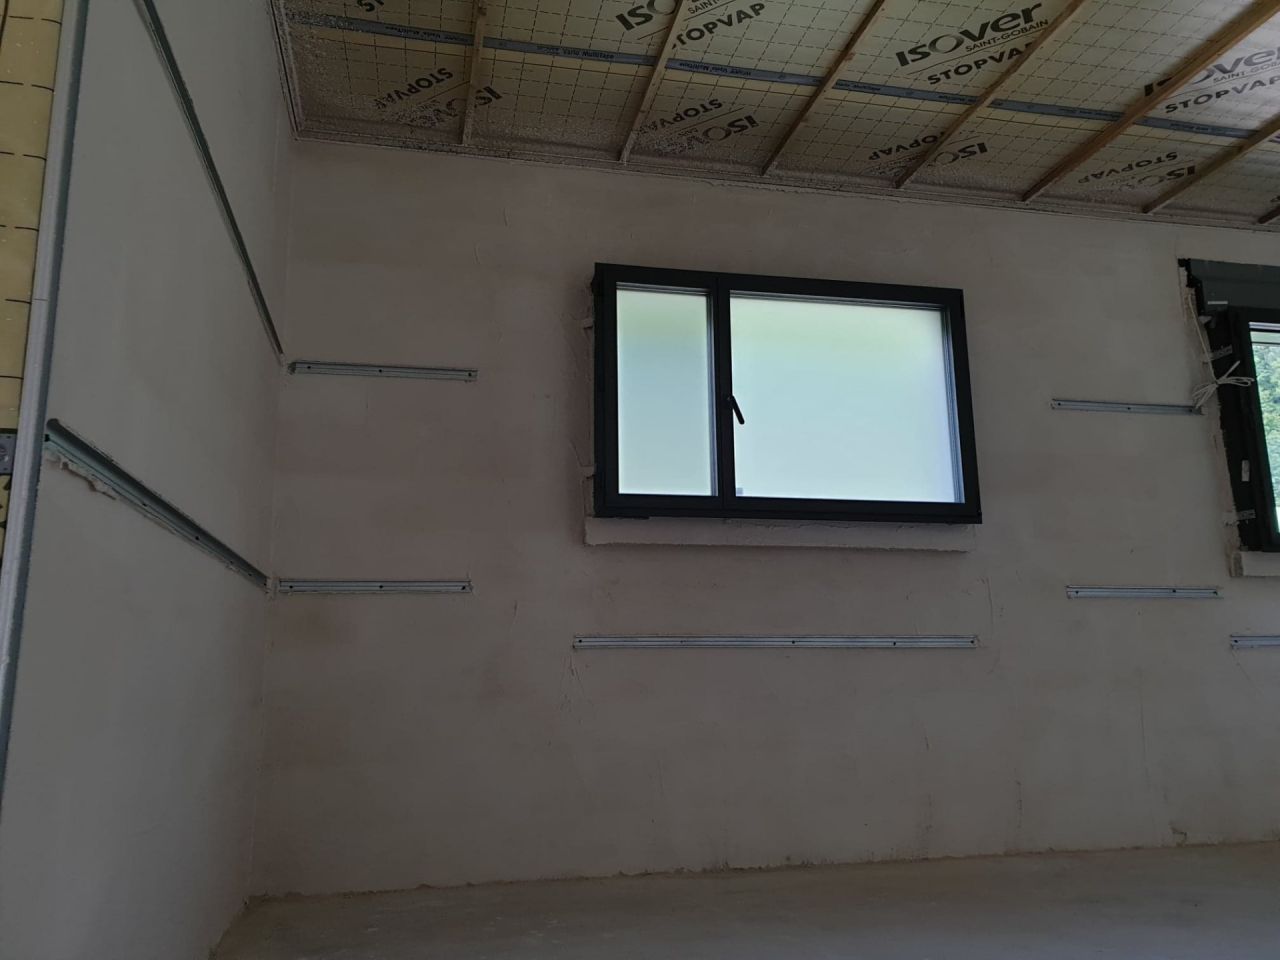 mise en place du projeté sur les murs pour isolation à l'air.